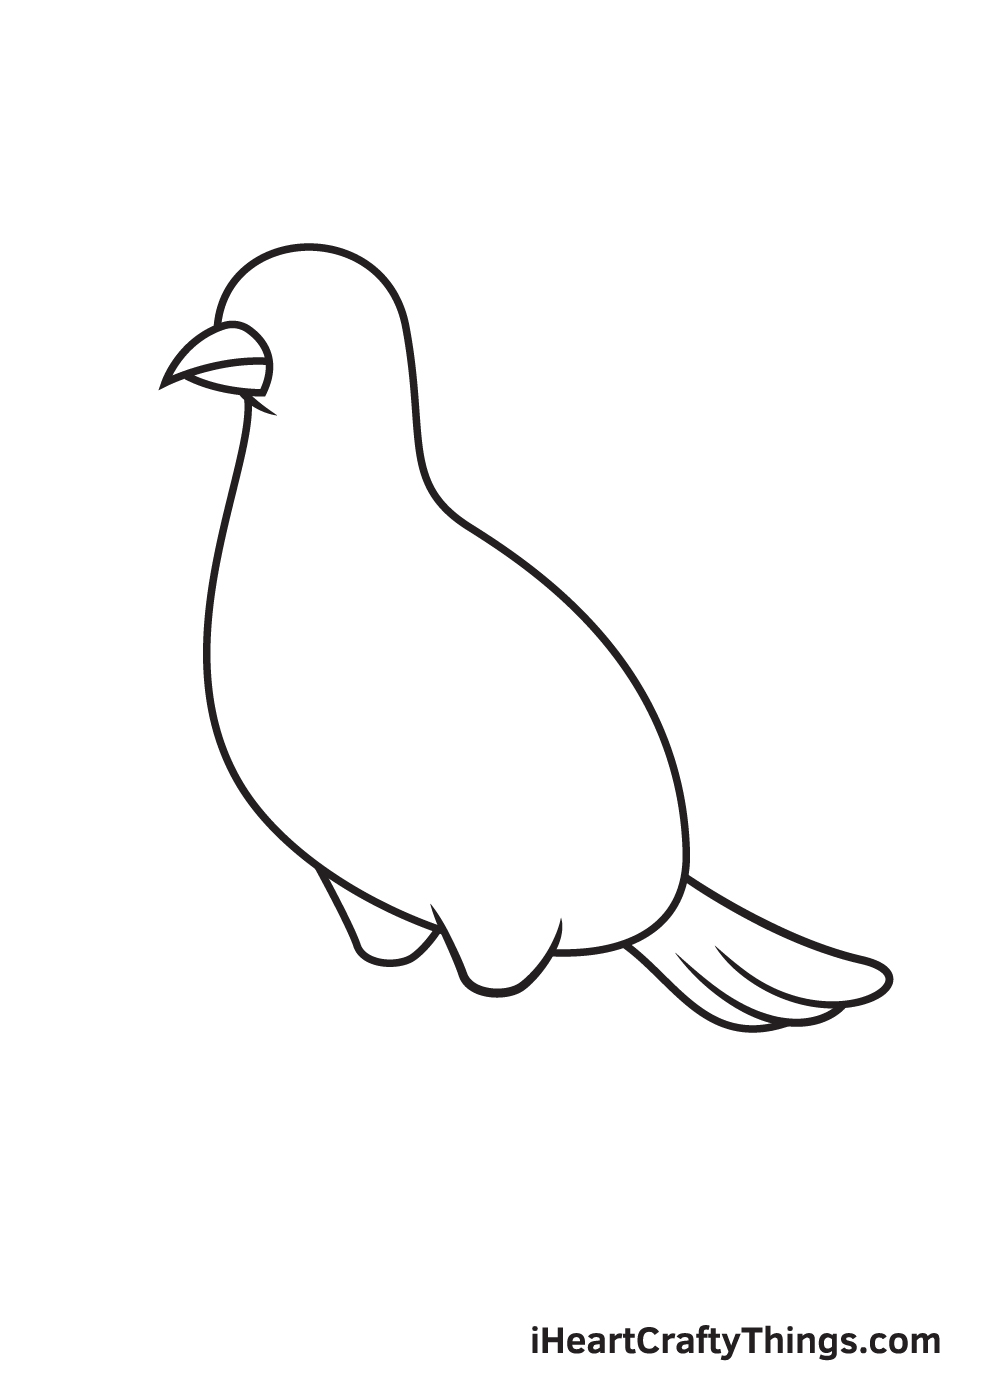 VẼ CON HEO - BƯỚC 6 - Hướng dẫn cách vẽ chim bồ câu đơn giản với 9 bước cơ bản